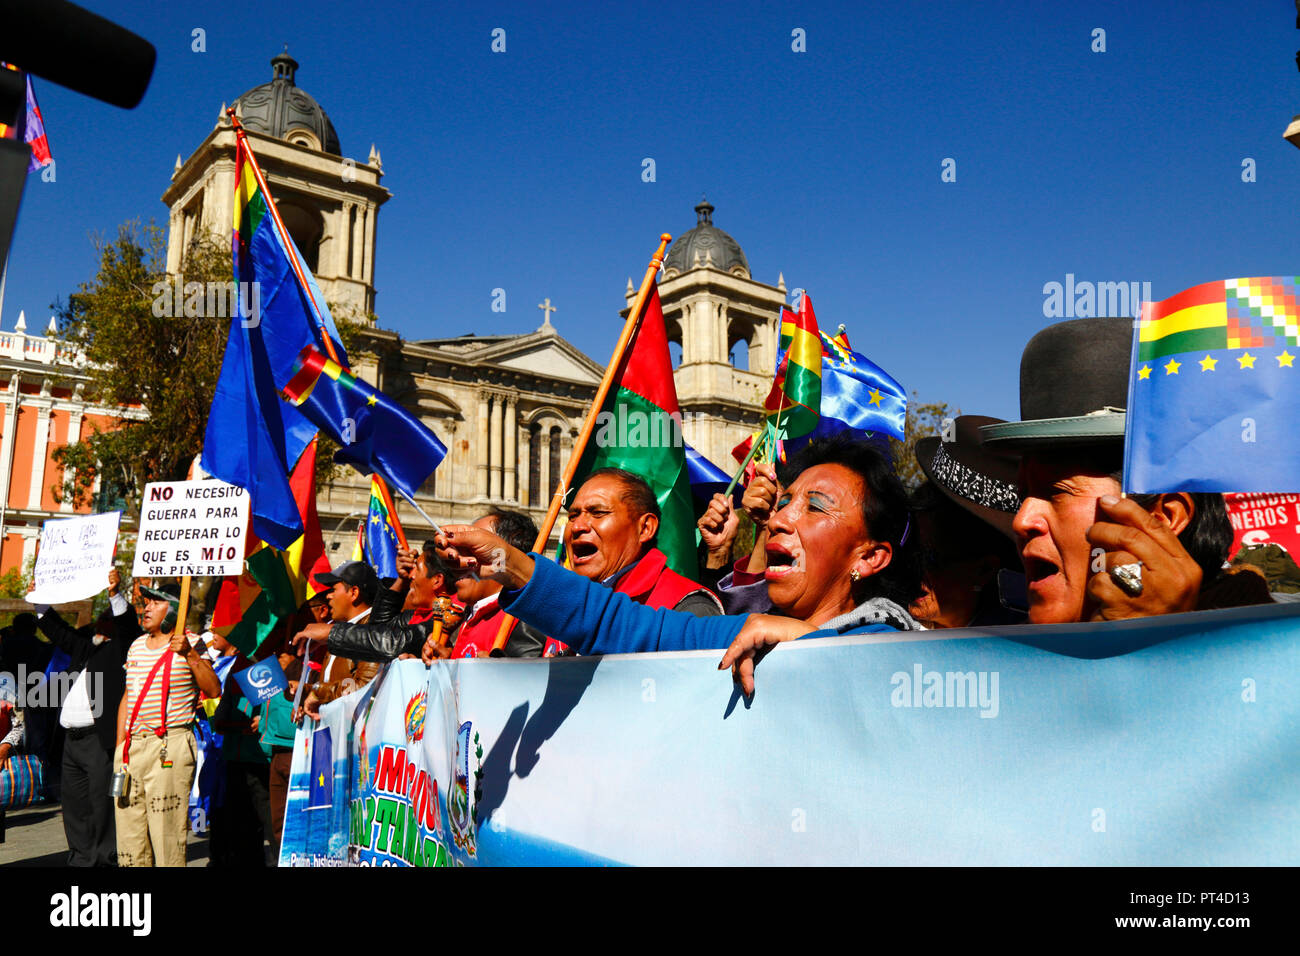 Persone in Plaza Murillo prima della lettura della sentenza per la Bolivia v Cile caso dinanzi alla Corte internazionale di giustizia dell' Aia, La Paz, boli Foto Stock